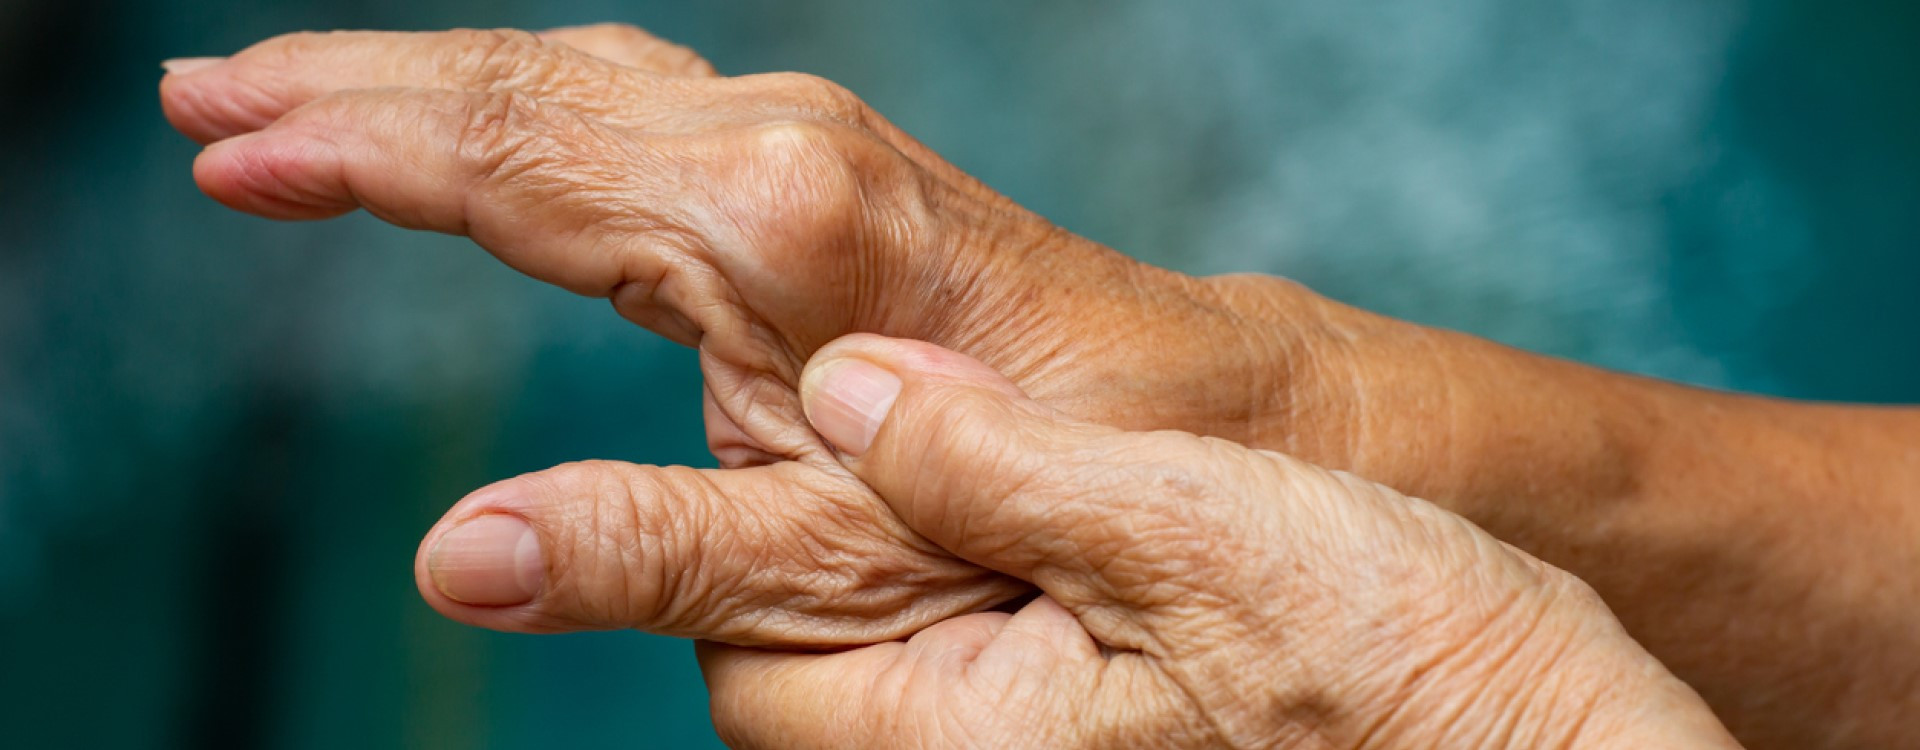 5 exercices simples pour soulager l'arthrose des mains